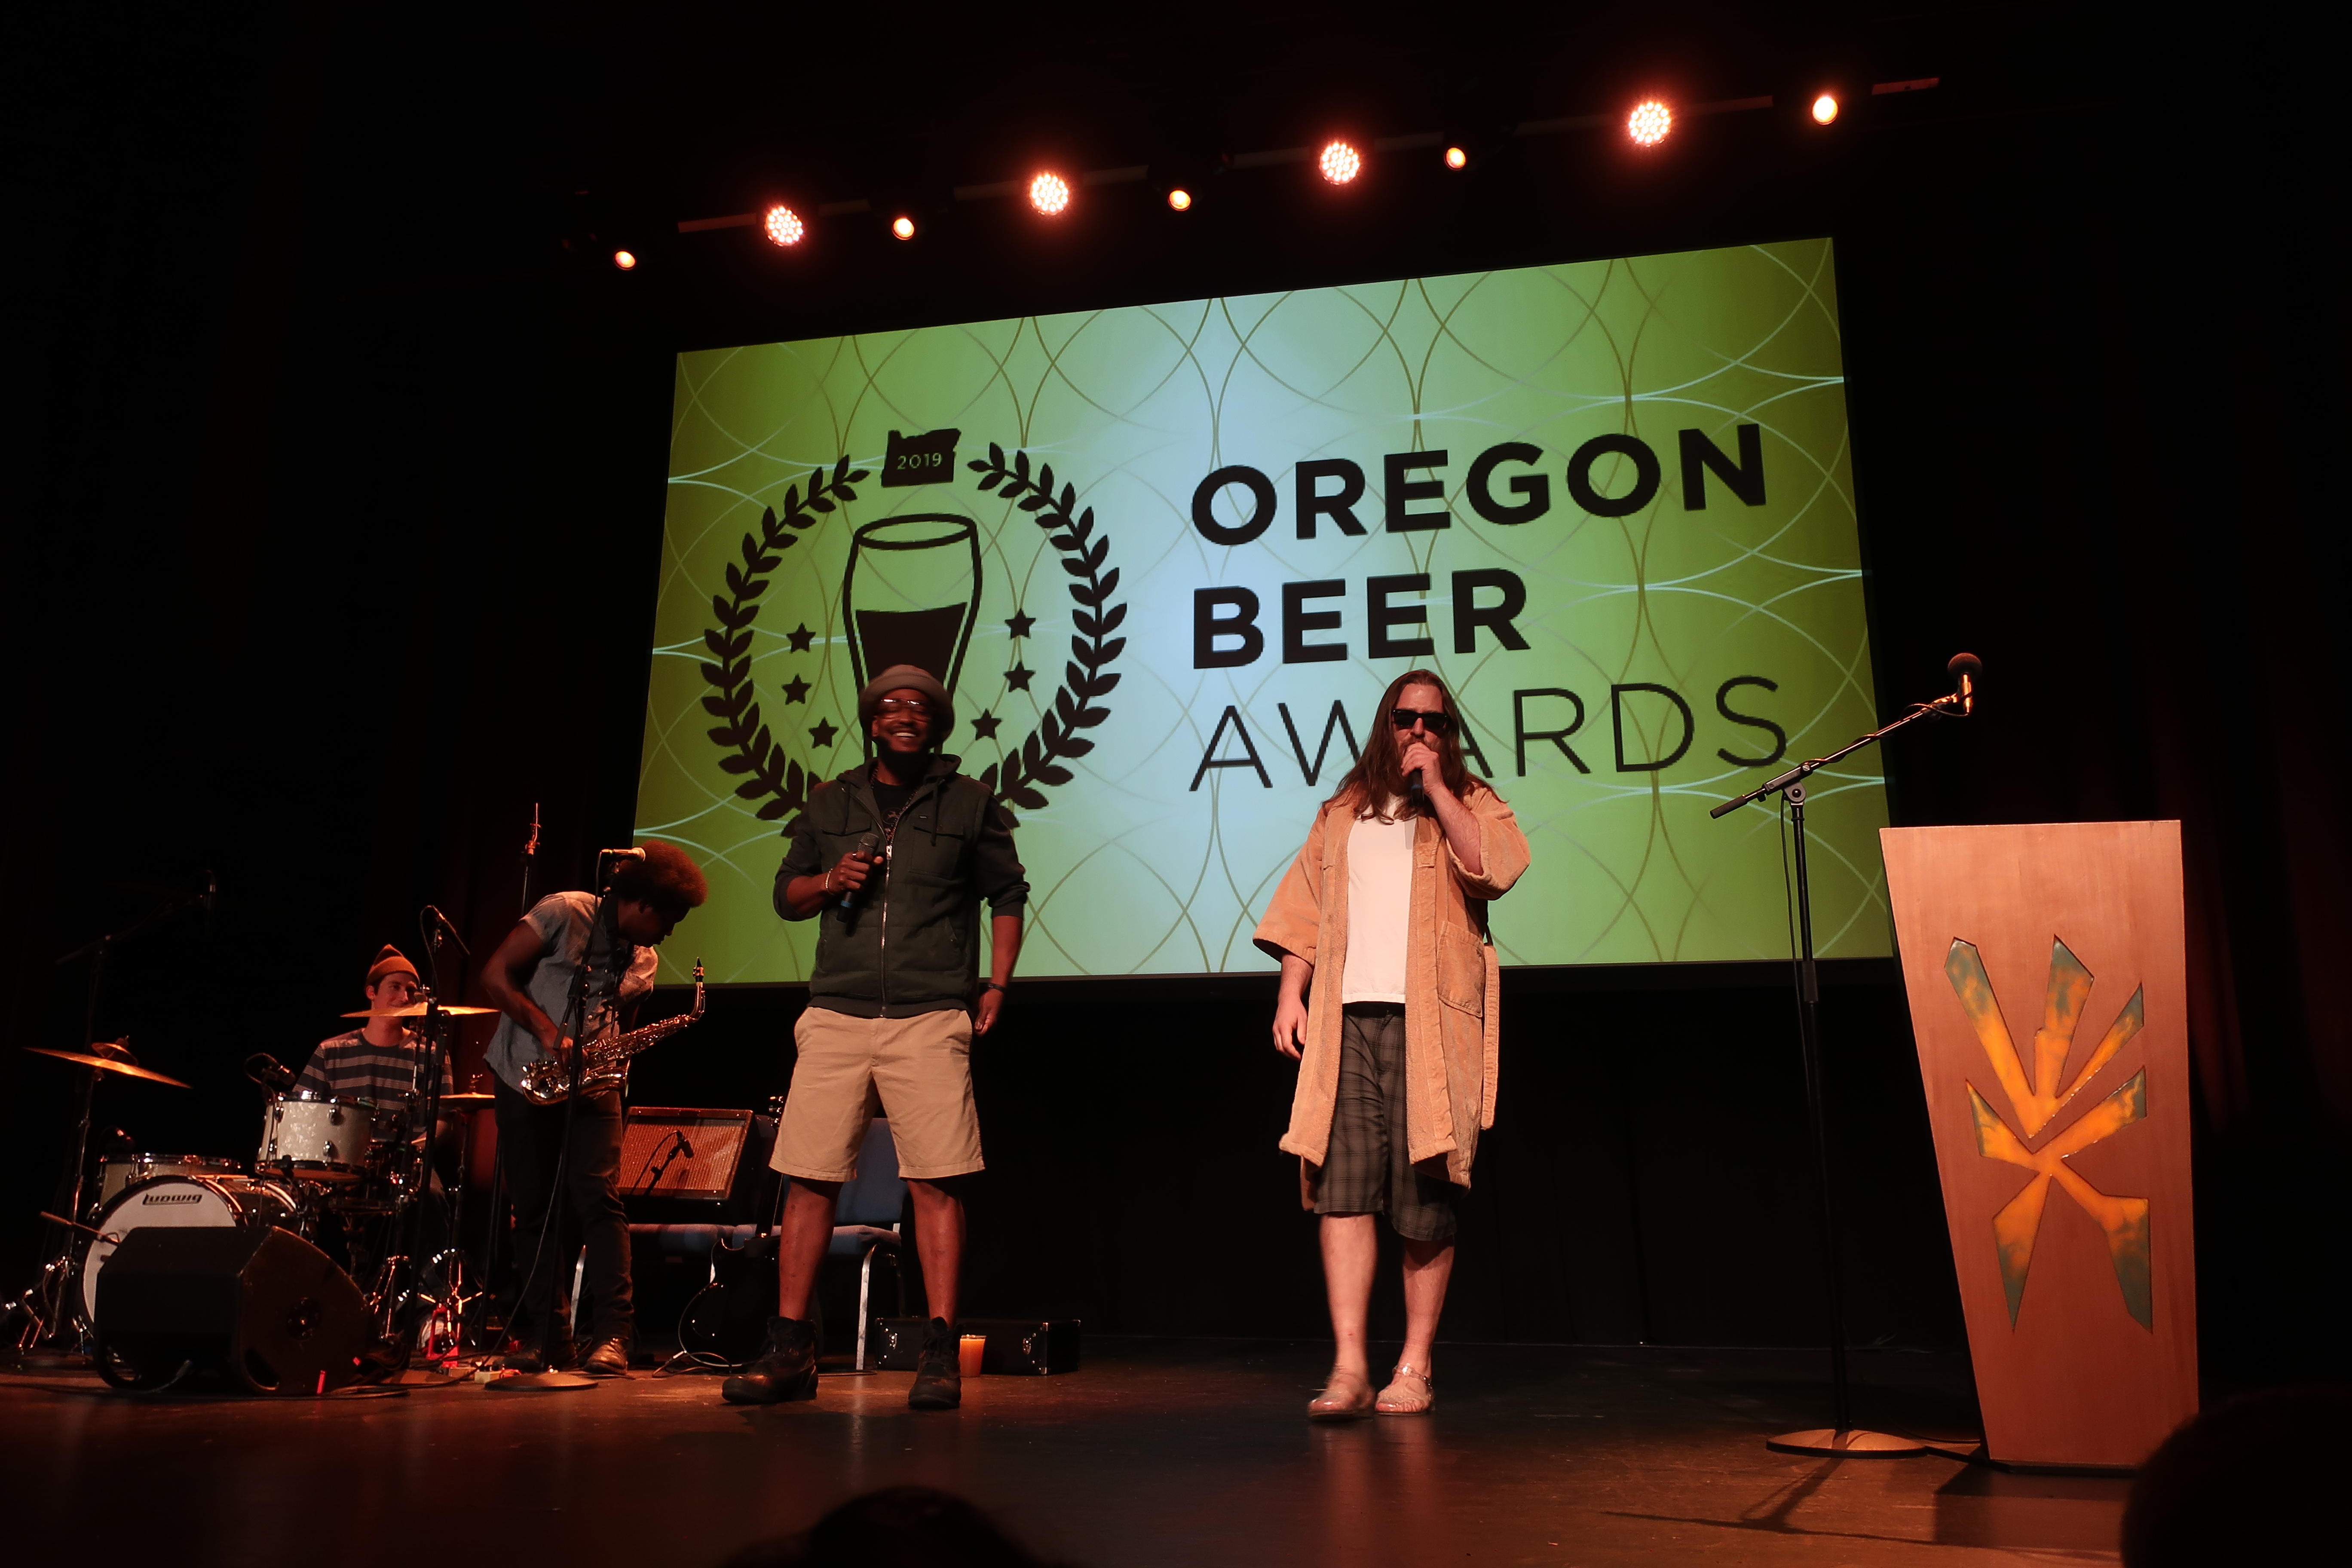 2019 Oregon Beer Awards Ceremony co-hosts, Joe Sanders and Ben Love.